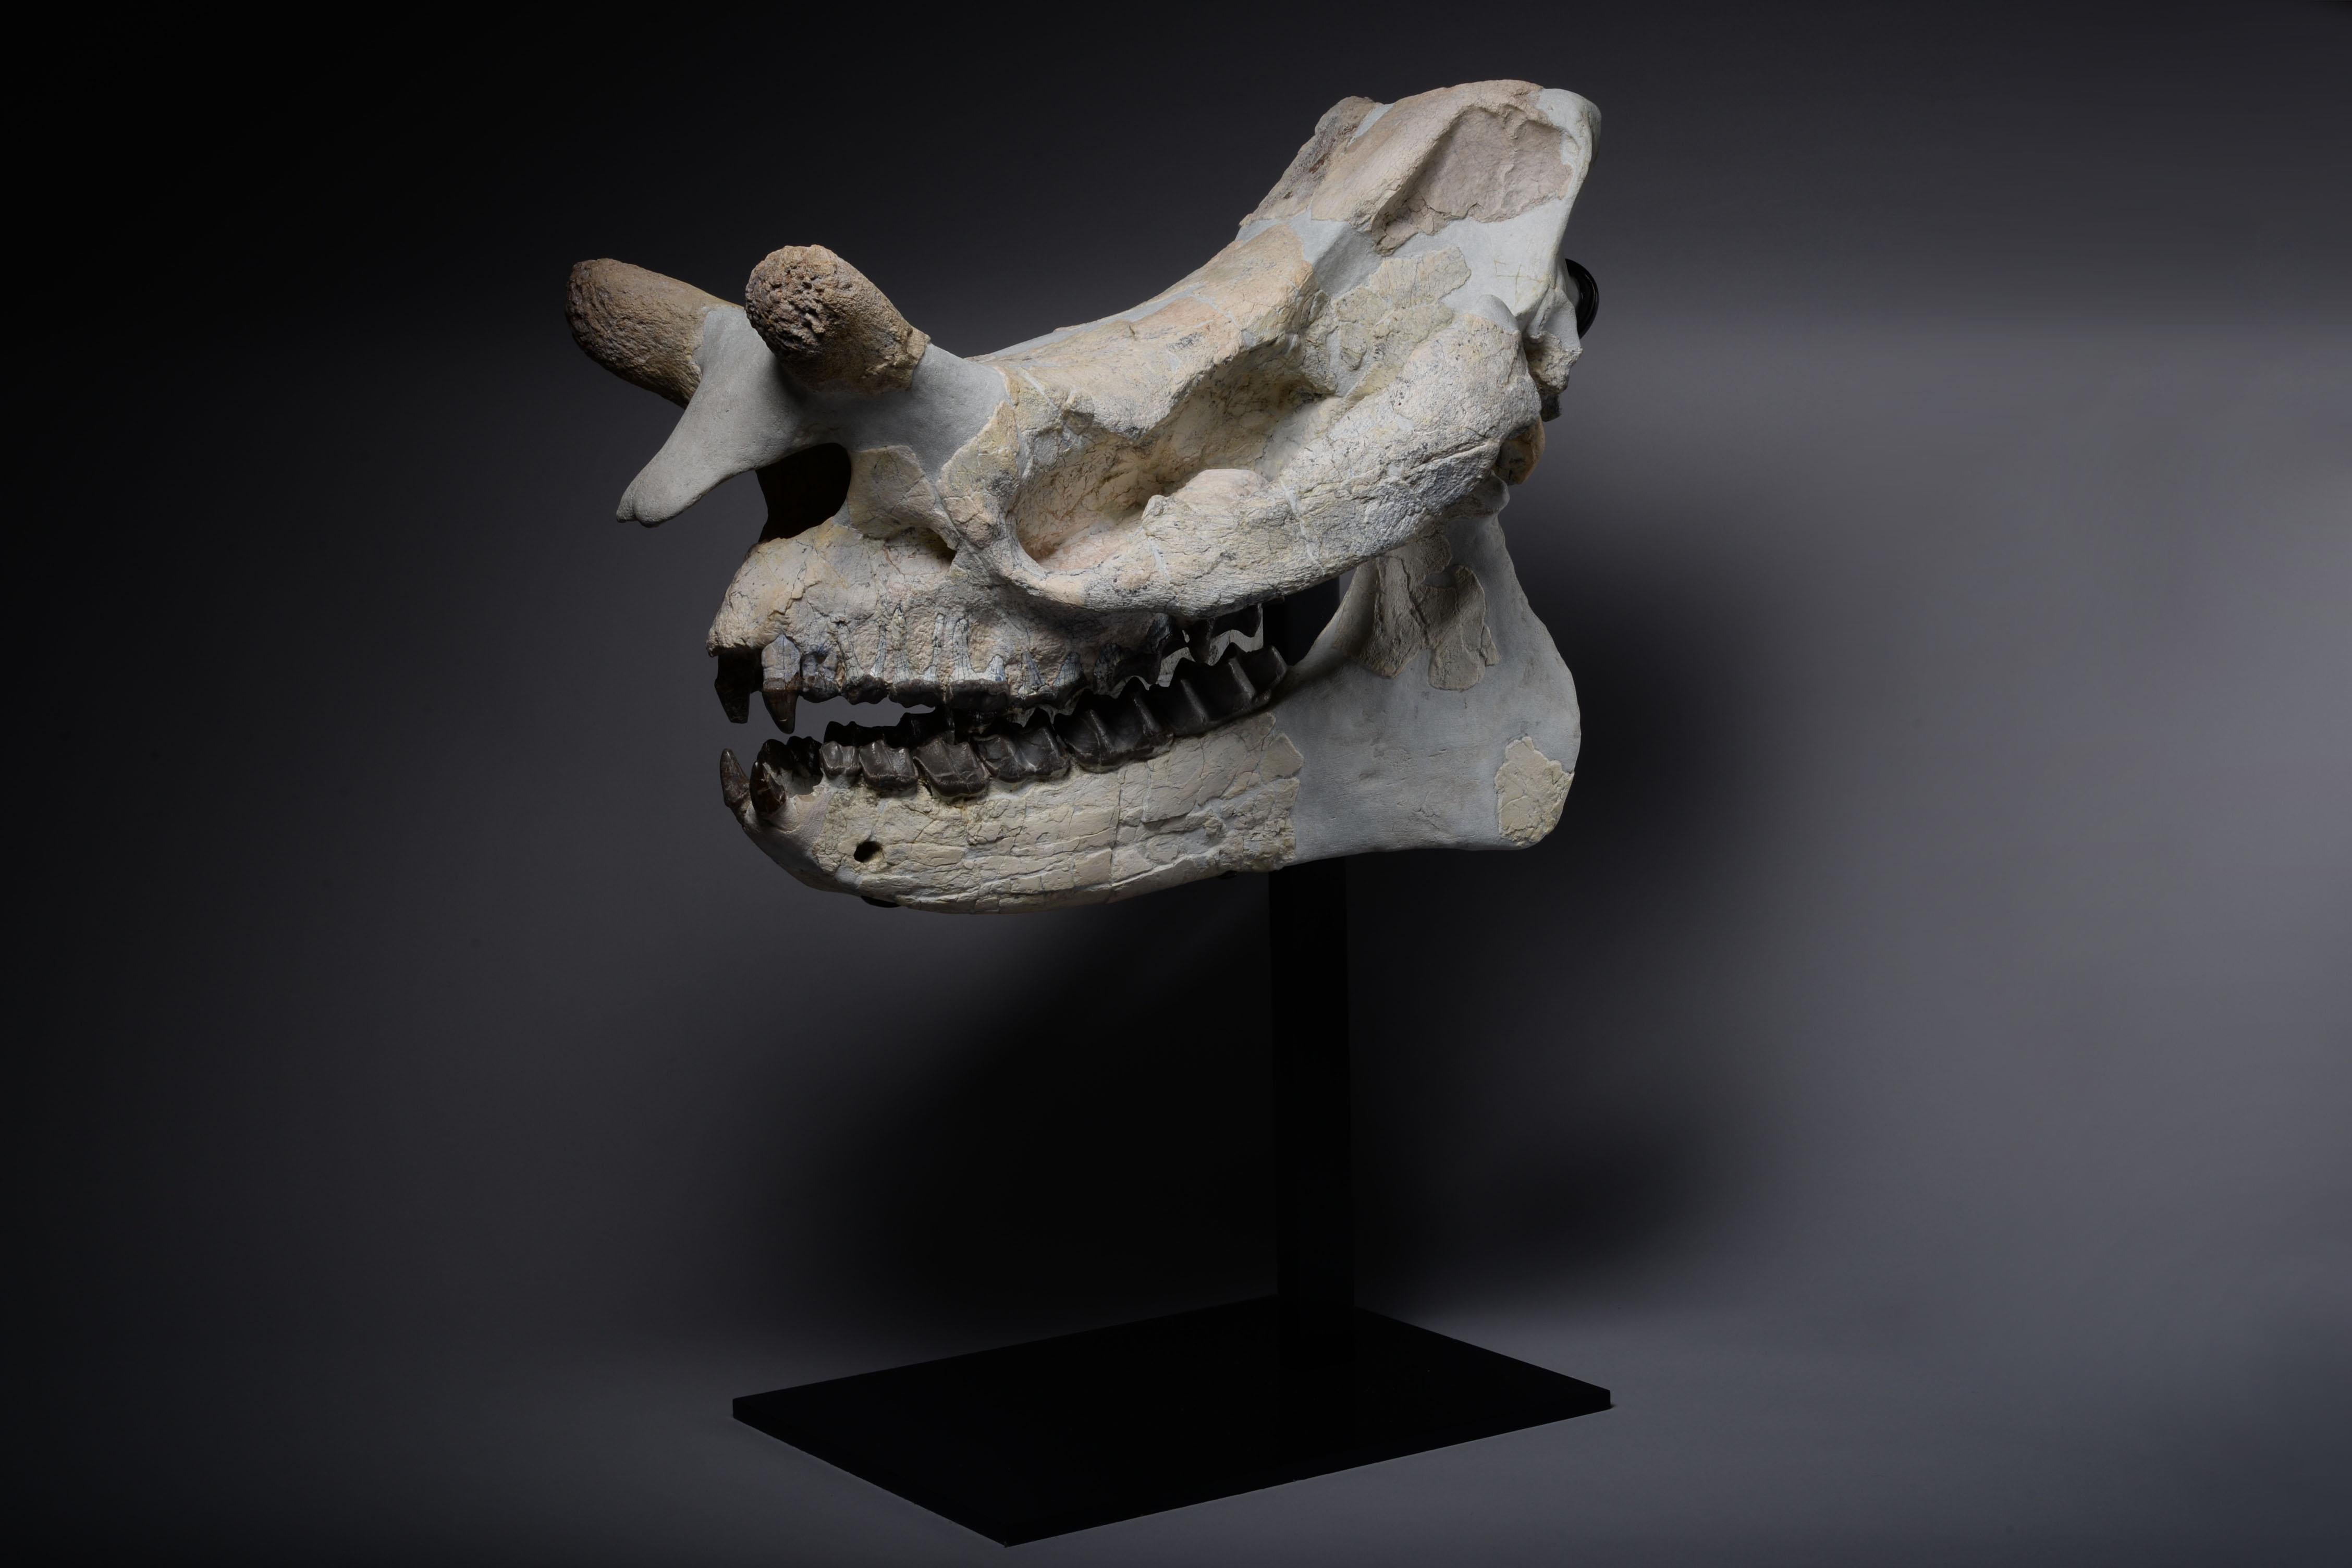 Other Large Megacerops Fossil Skull